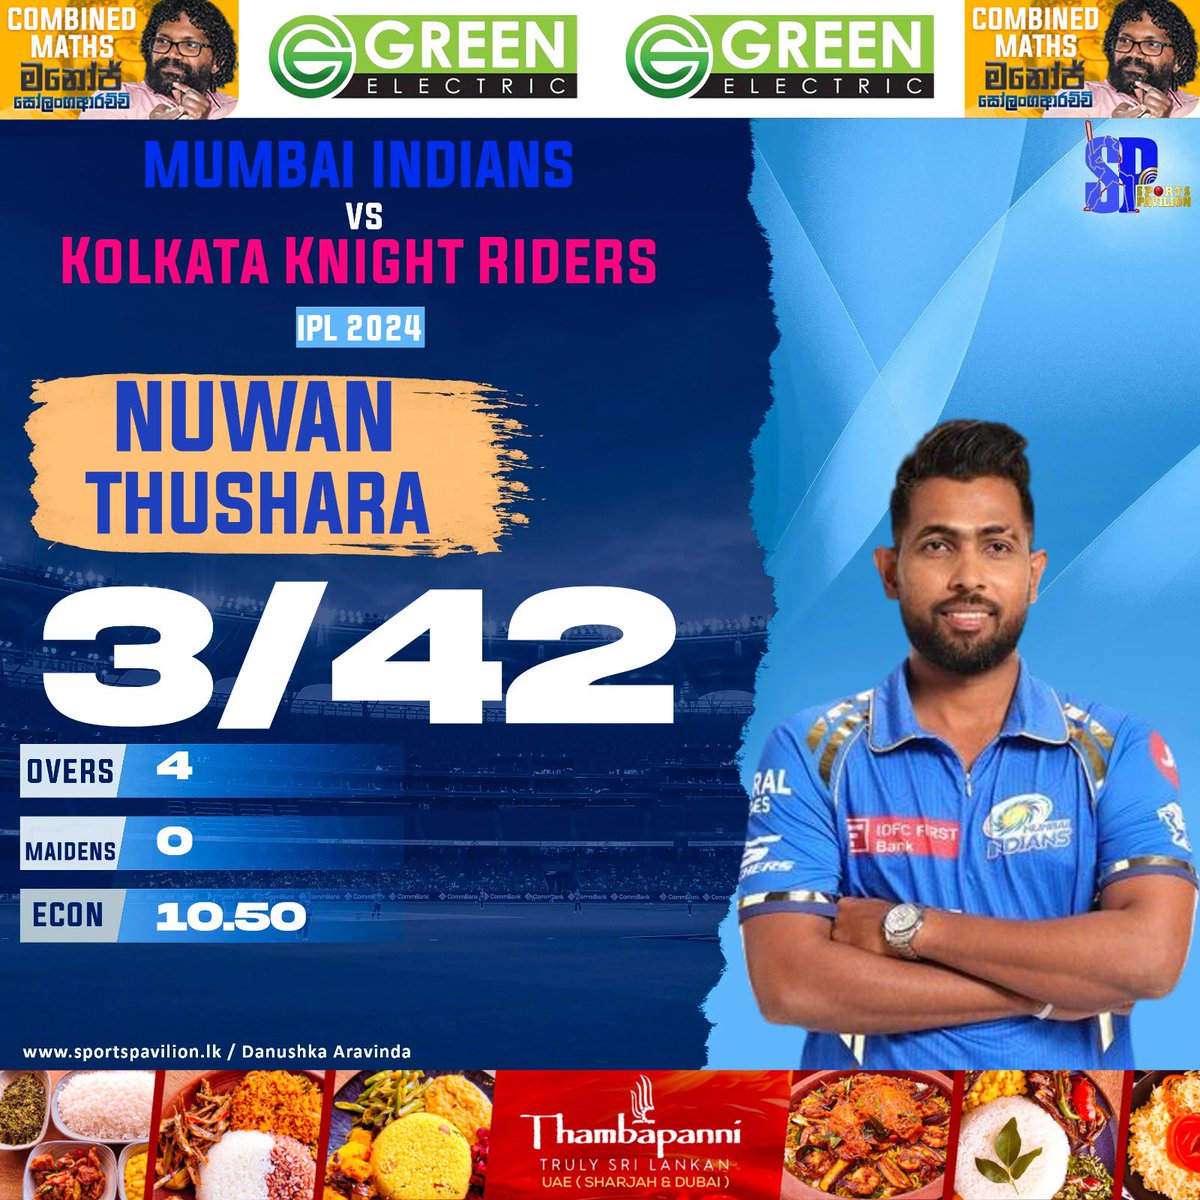 🇱🇰⚾️ @NuwanThushara53 ( MI ) vs KKR

3/42 (4) 

#sportspavilionlk #IPL2024 #IPL #NuwanThushara #danushkaaravinda